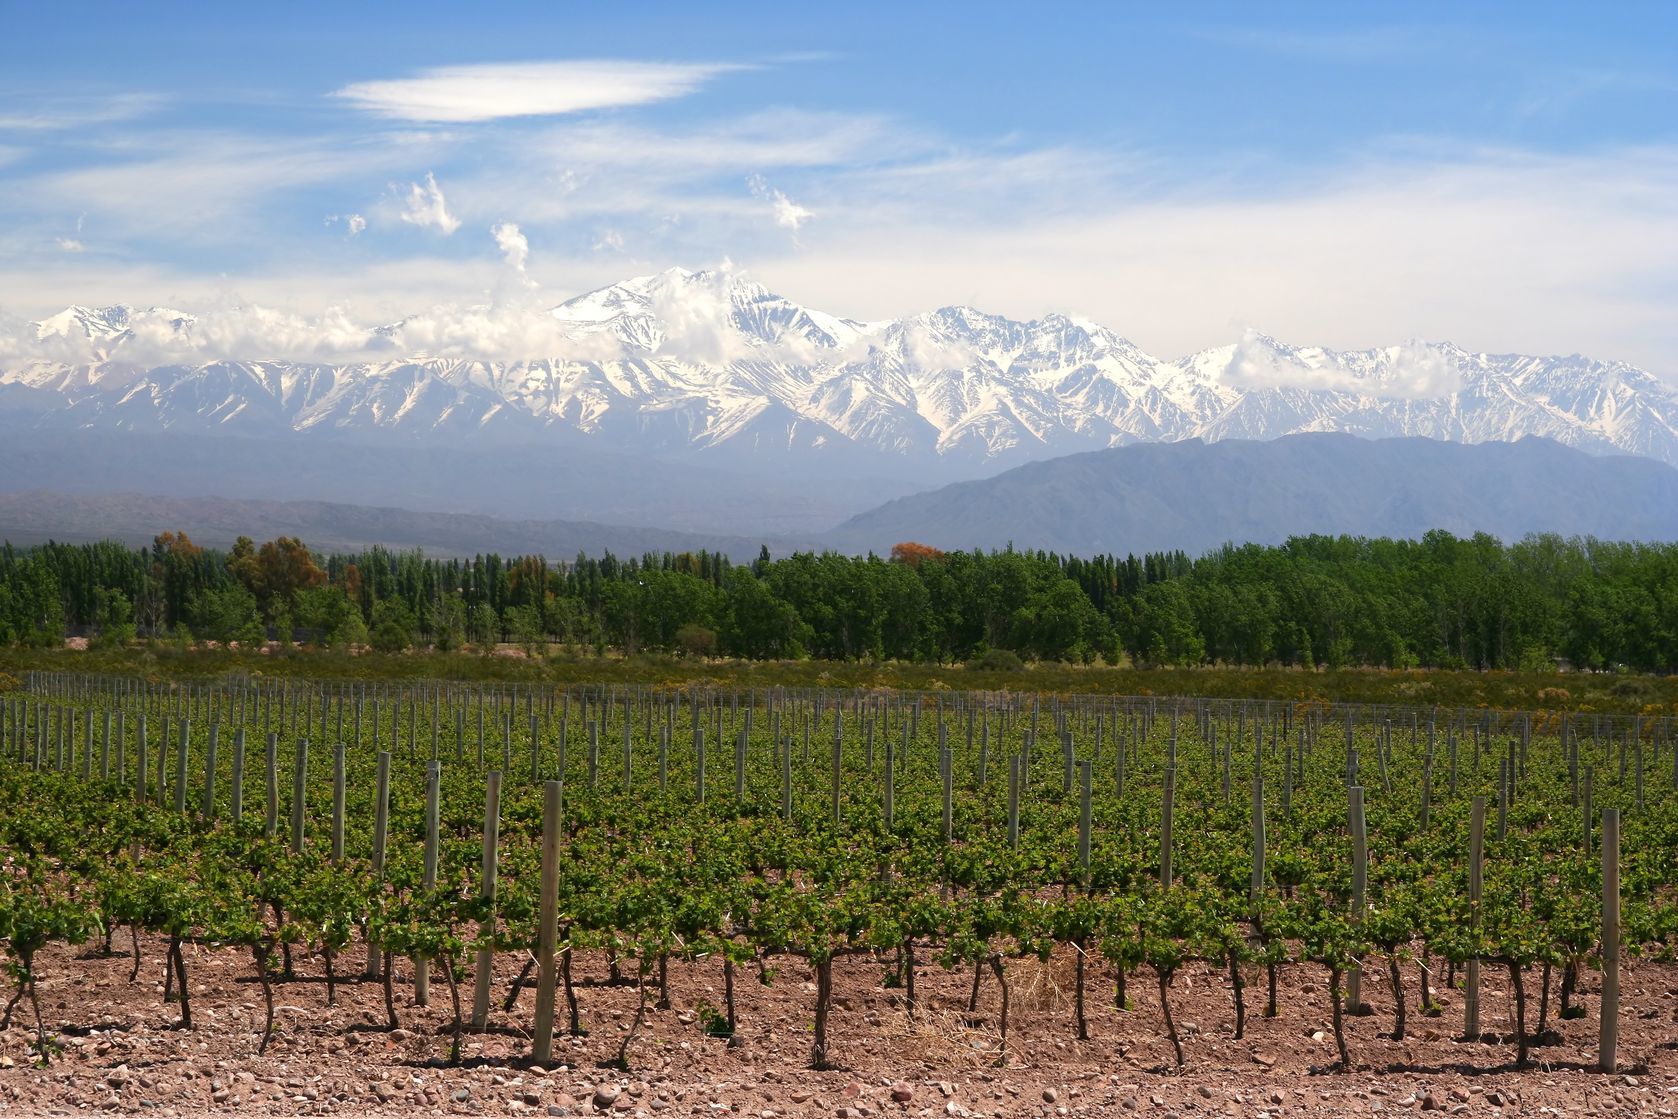 Vinice a horská krajina v Argentině | aaabbbccc/123RF.com